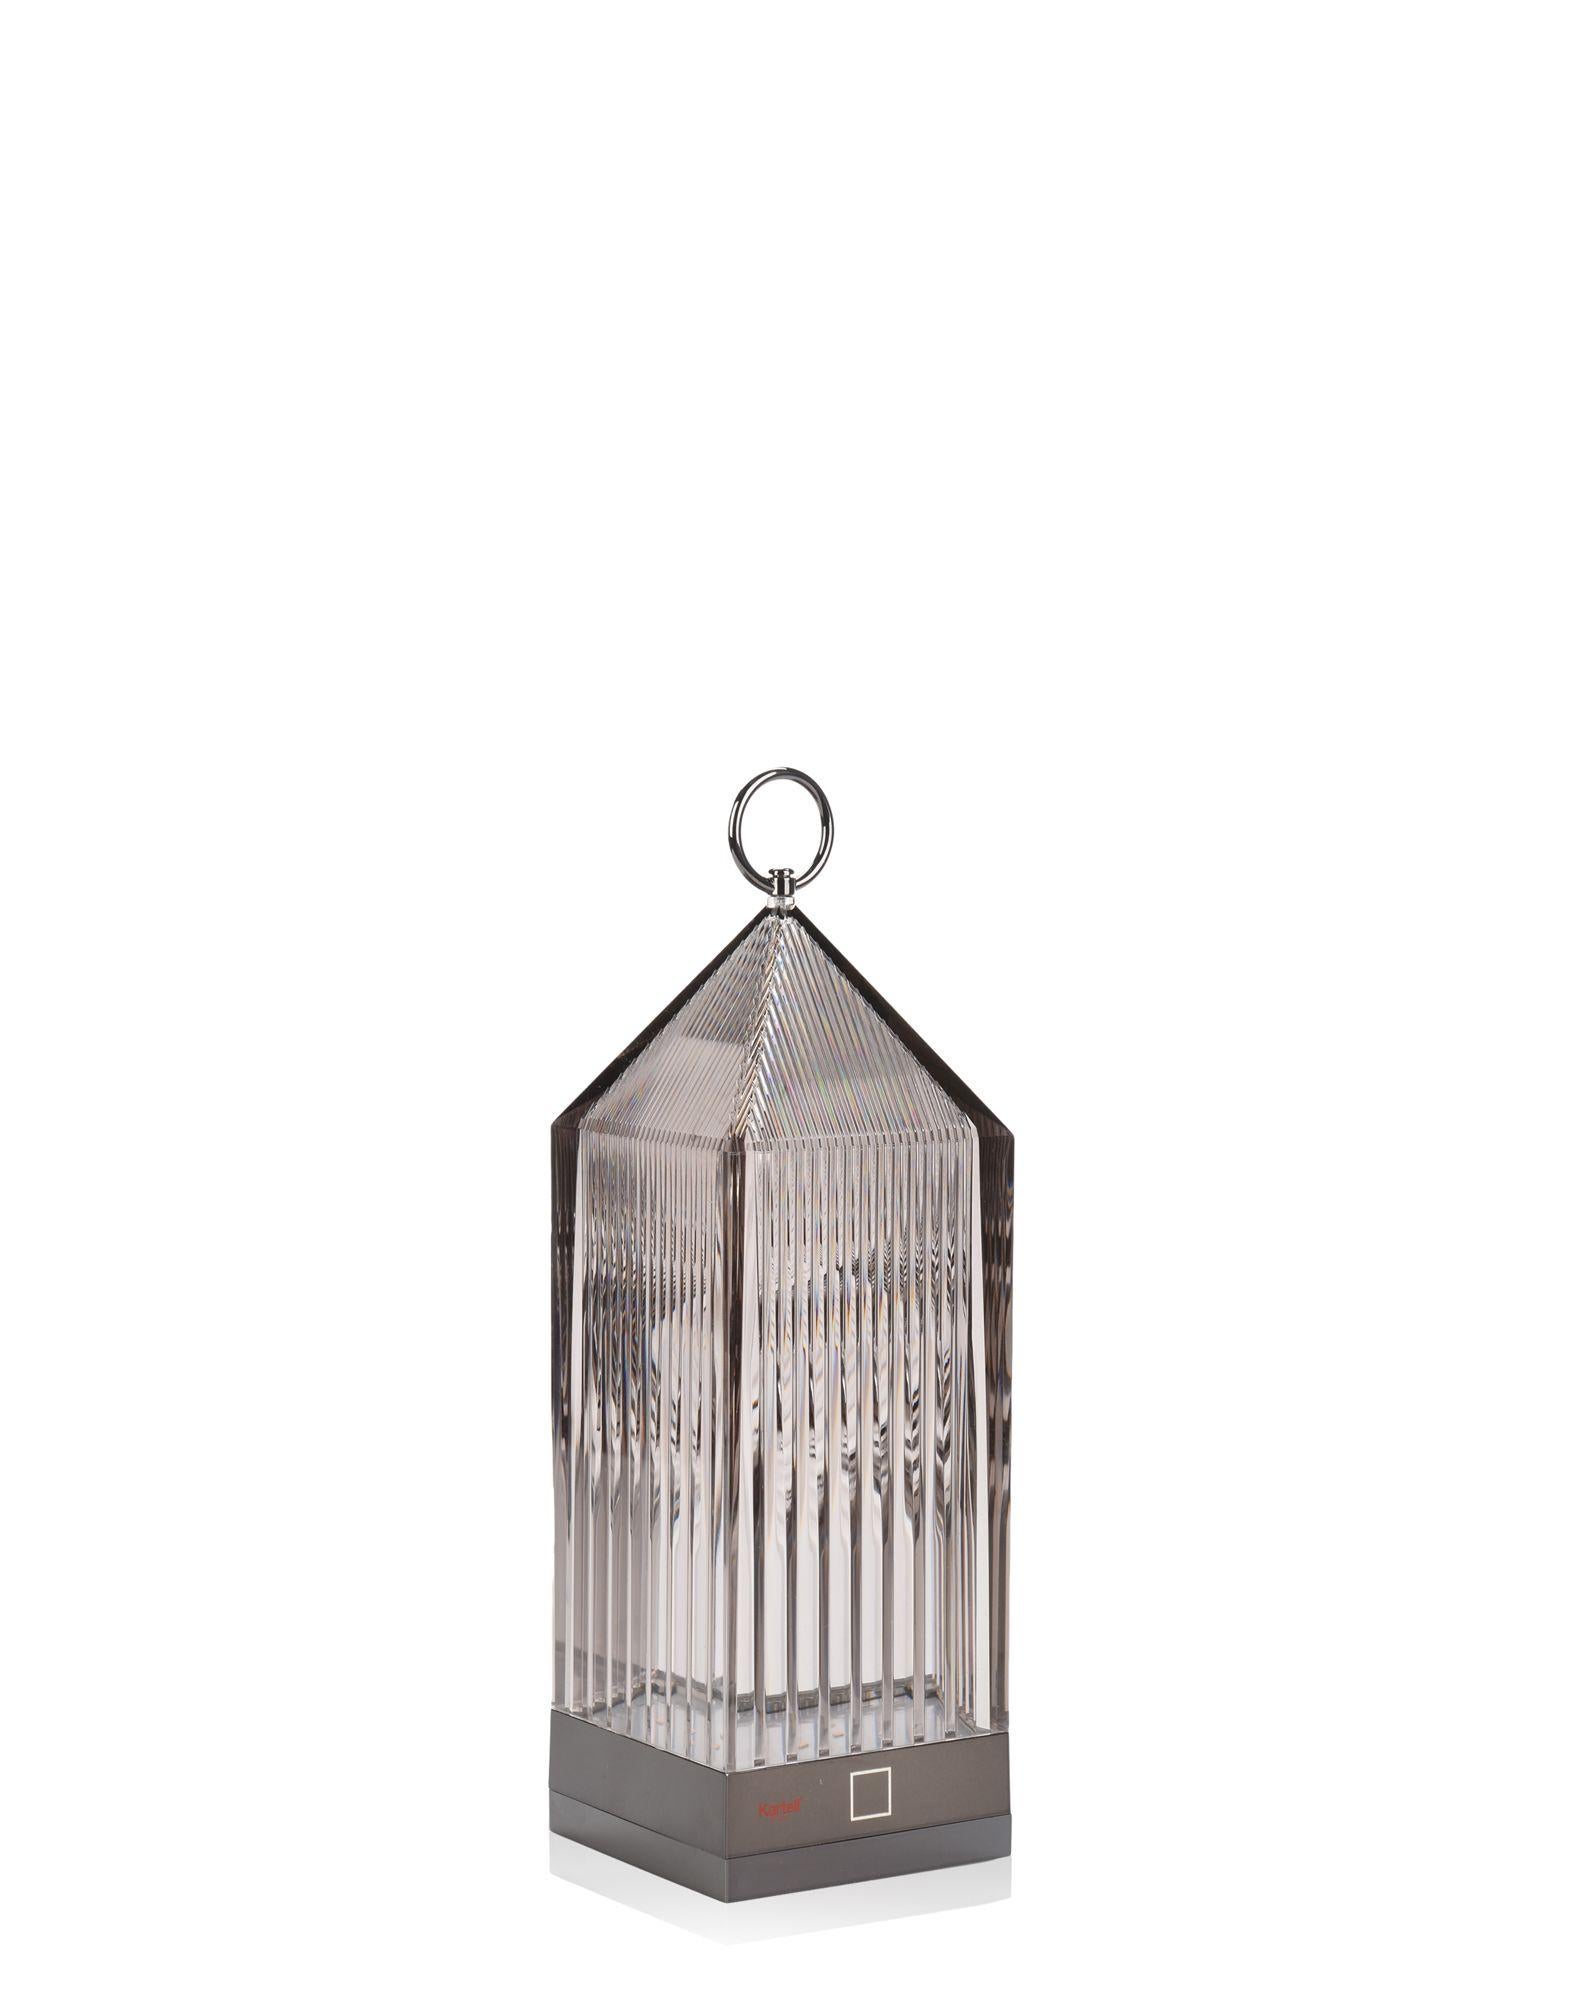 Lantern von Fabio Novembre ist eine originelle, tragbare, transparente, aufladbare